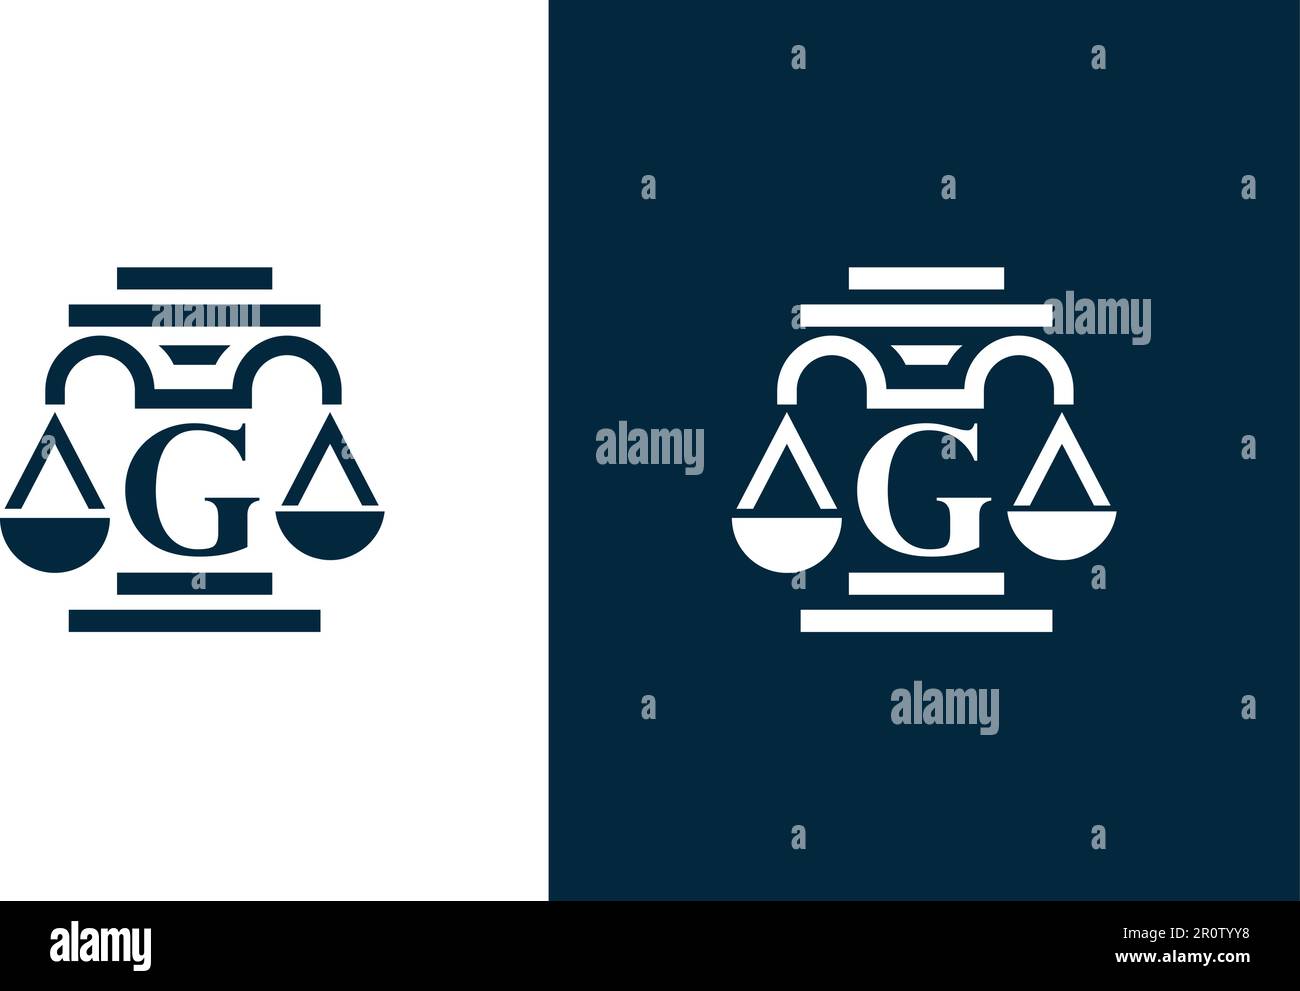 'G'   letter law firm logo design Stock Vector